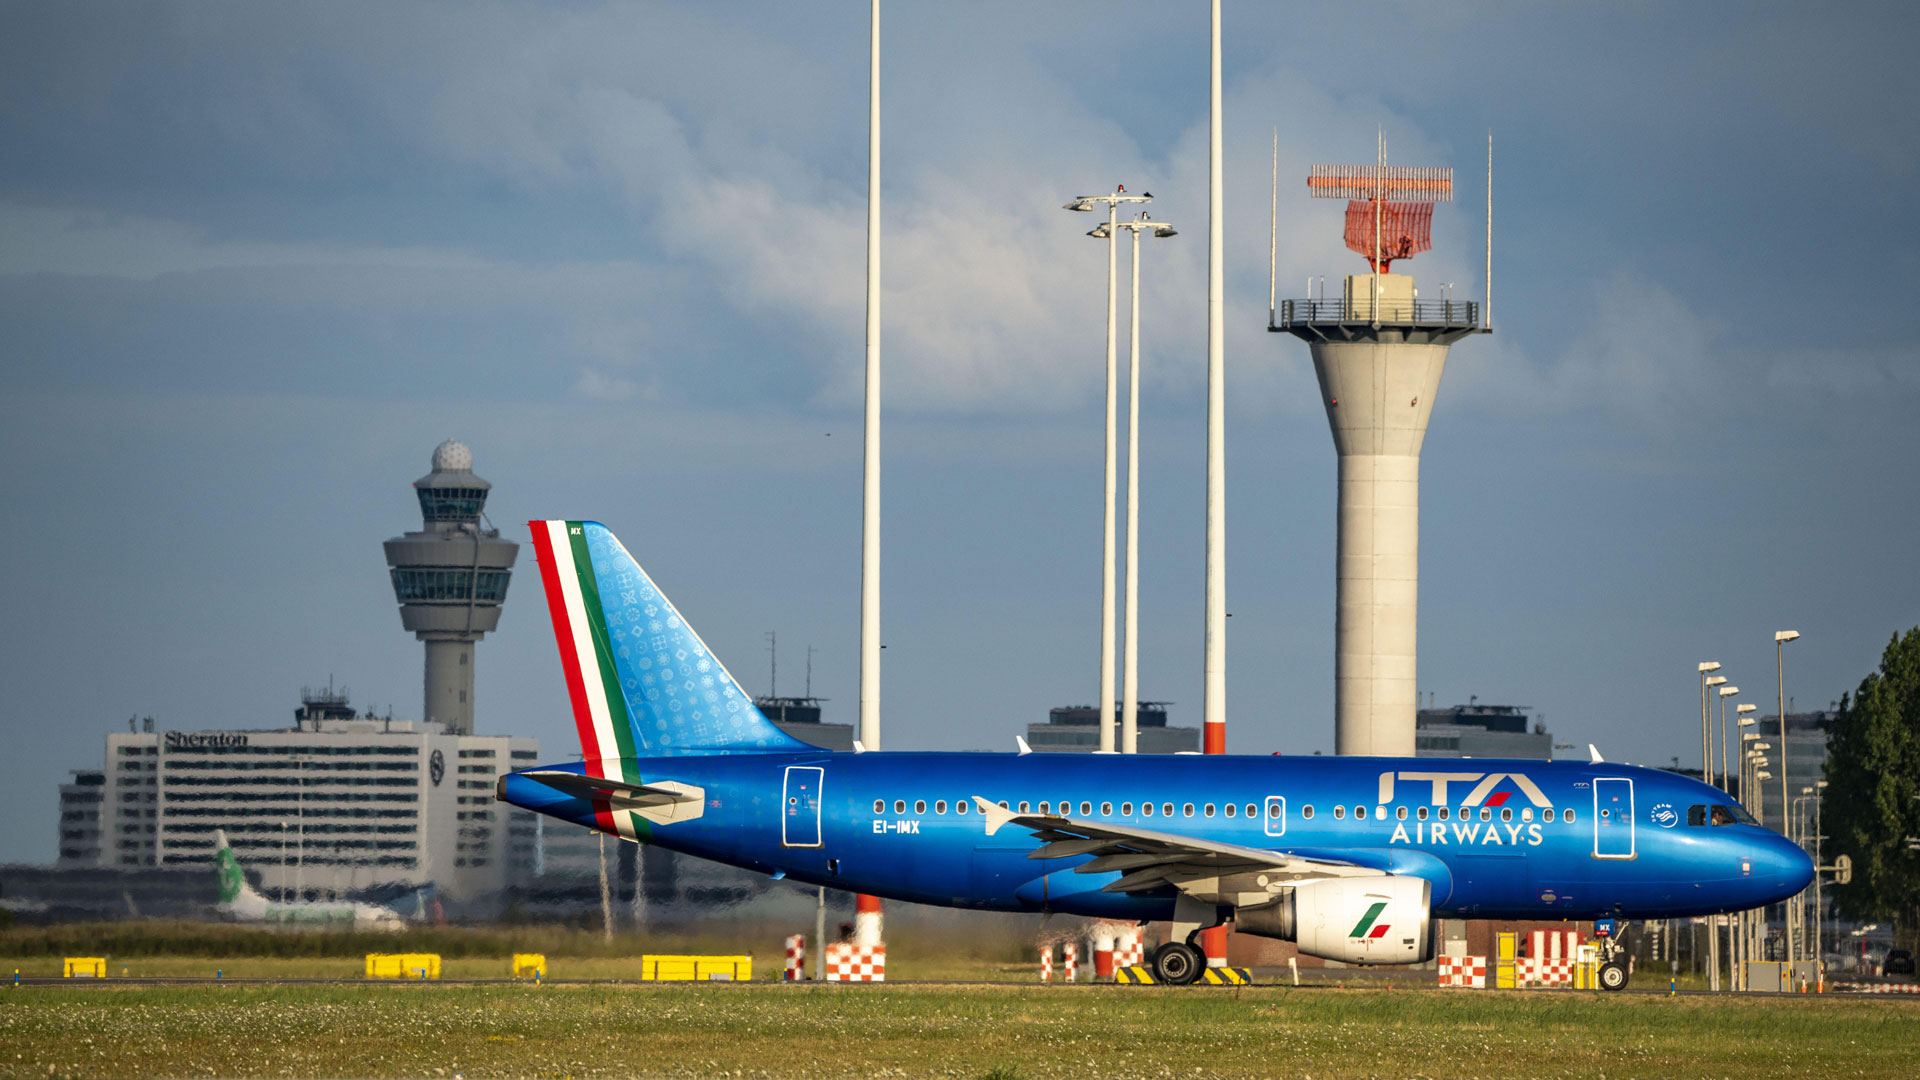 ITA Airways Airbus am Flughafen Amsterdam Shiphol. | picture alliance / Jochen Tack